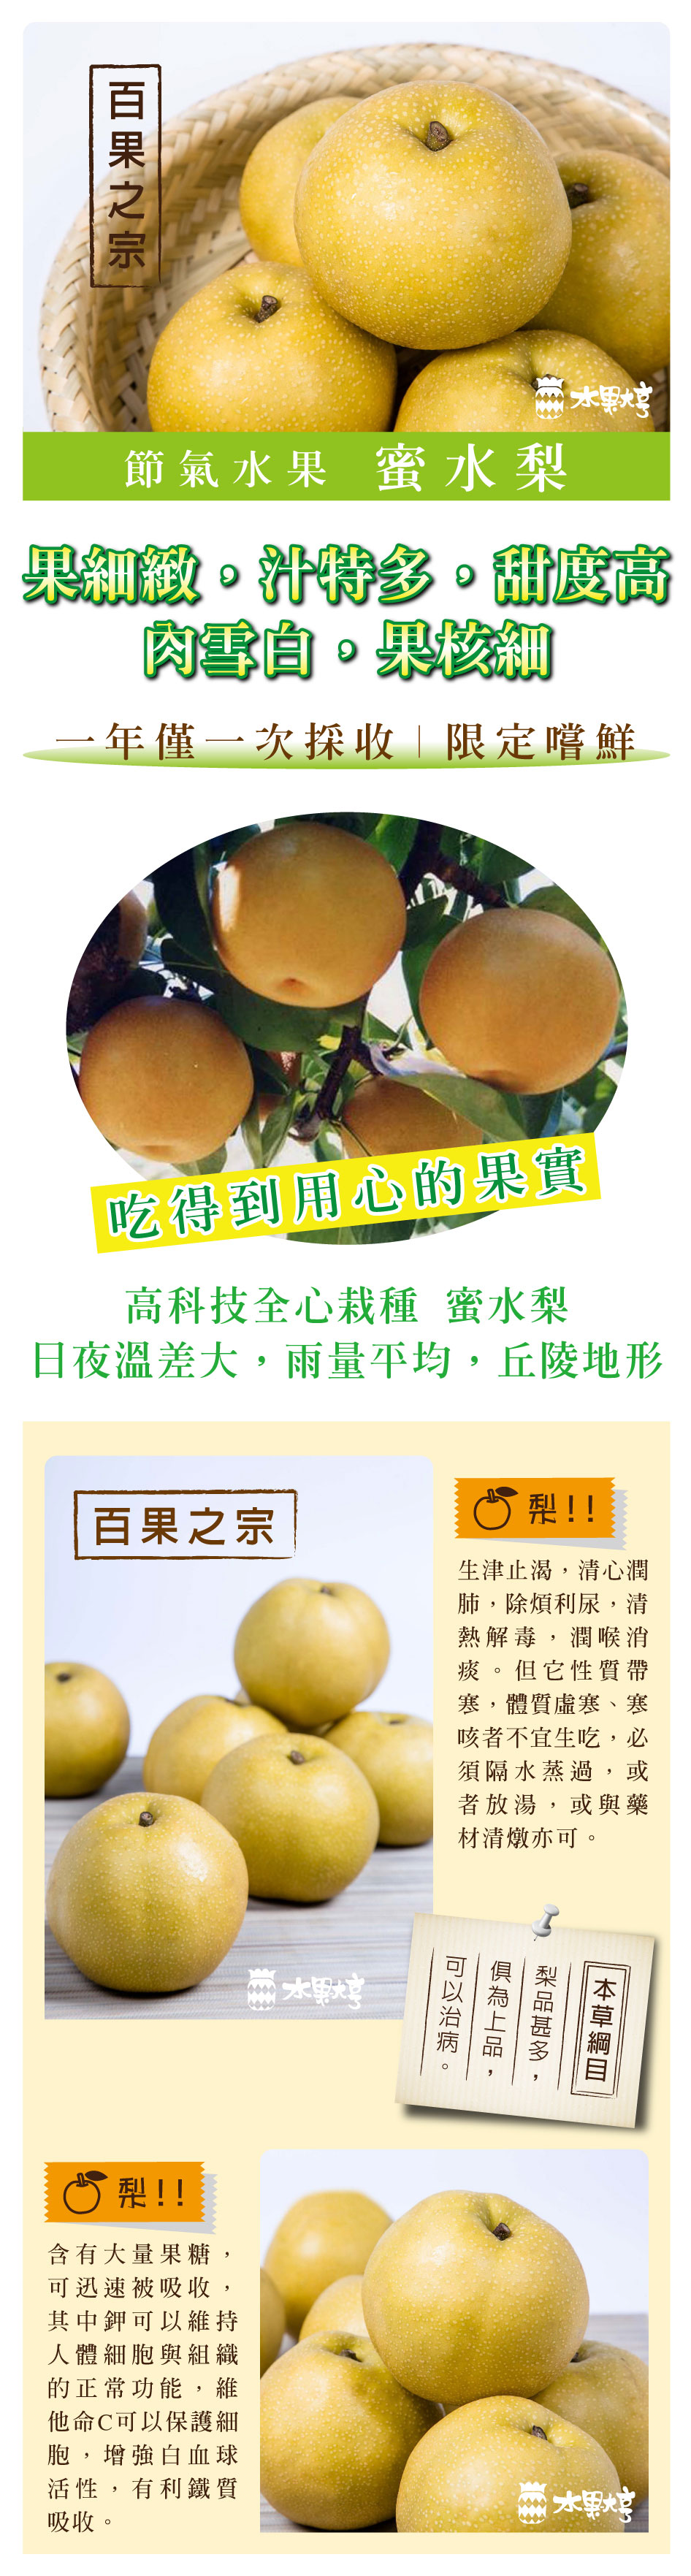 水果大亨 台灣雪梨禮盒